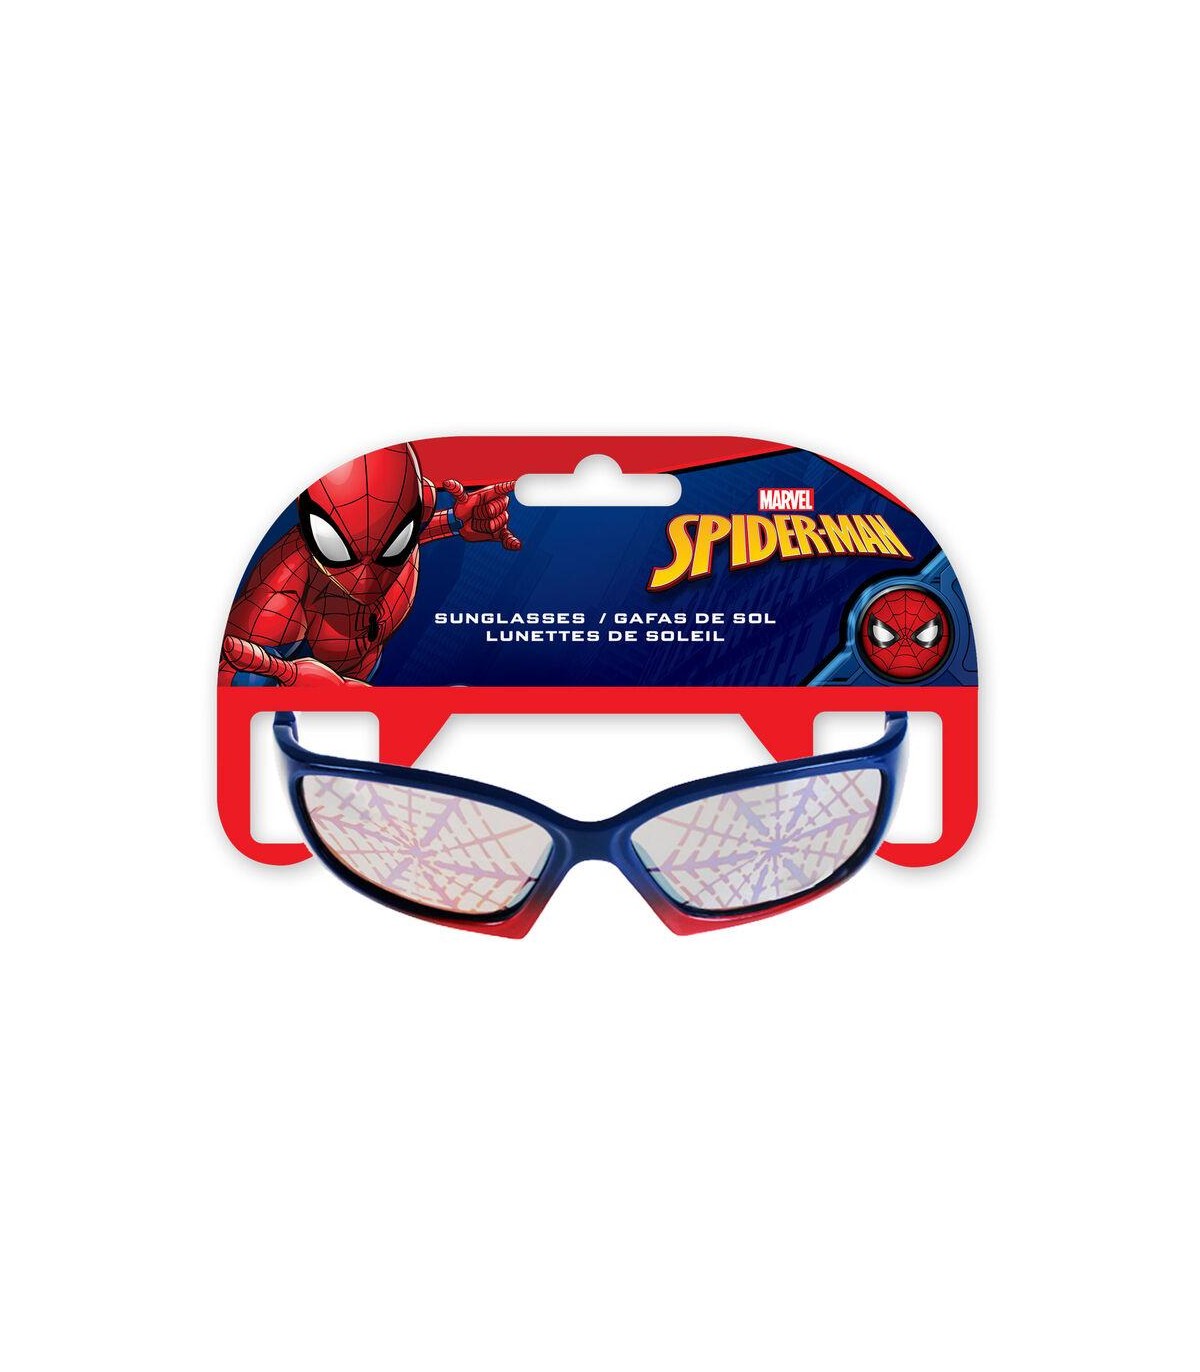 Licencia Oficial Marvel Cerdá Gafas de Sol Spiderman Niño 